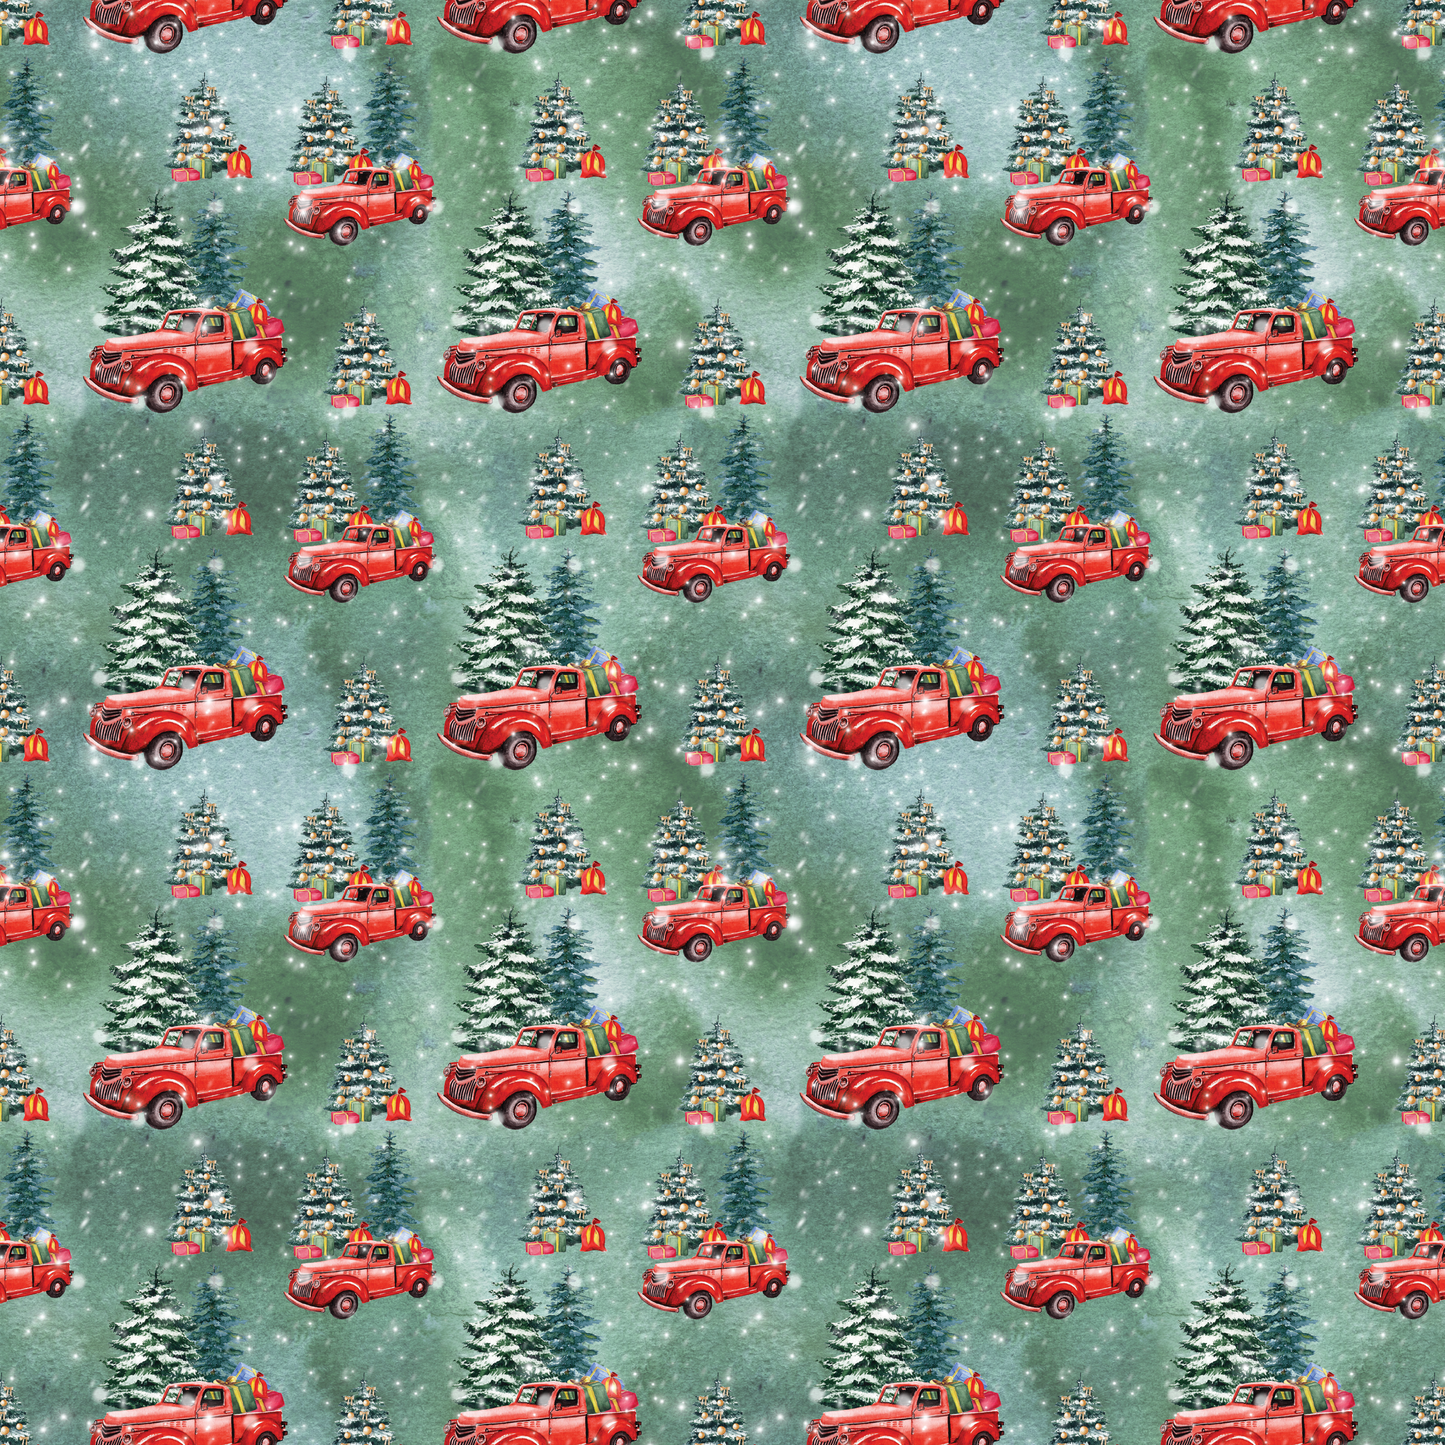 Camions et cardinaux de Noël - Camions et cadeaux d'arbres 010